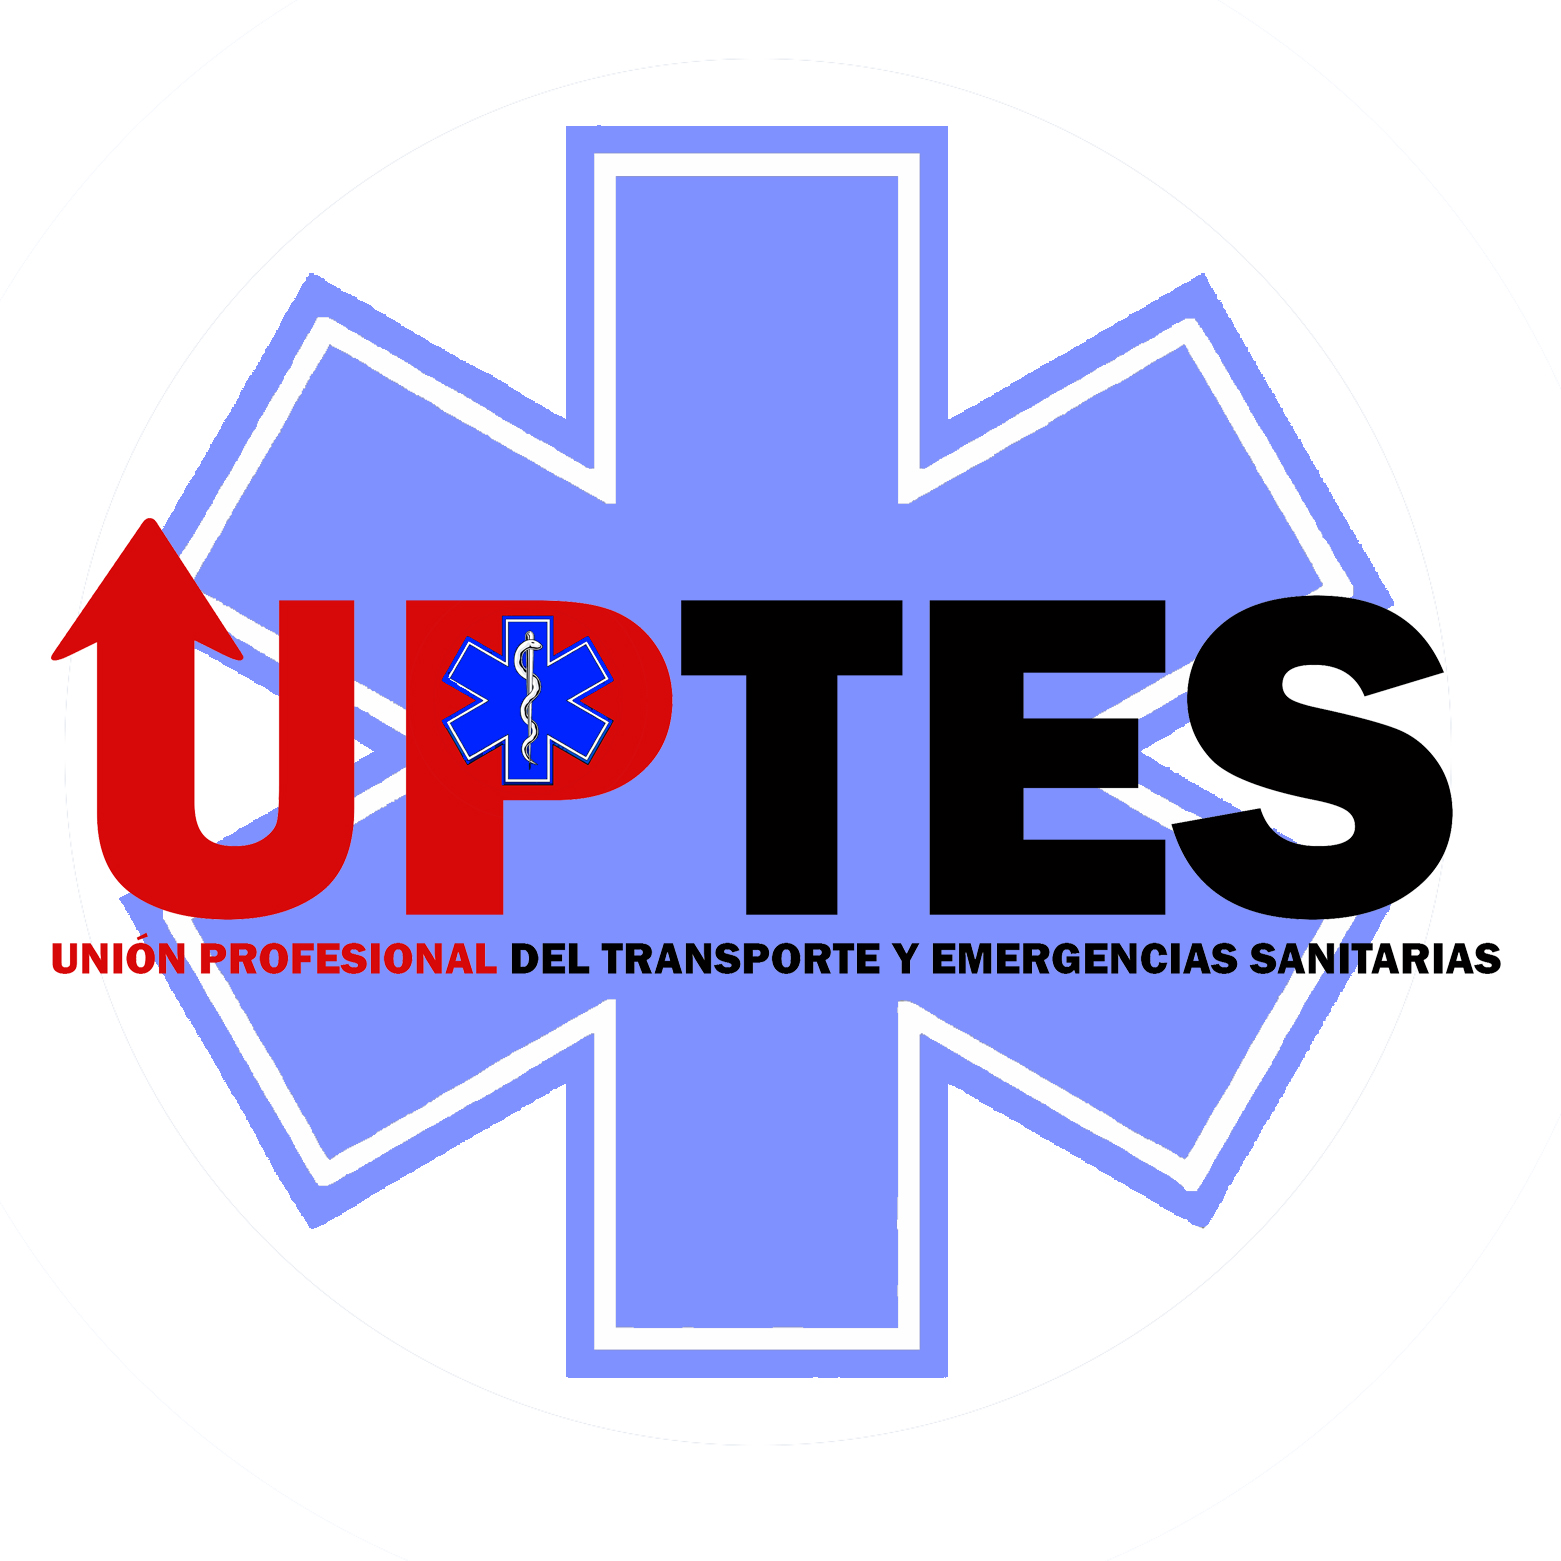 Union profesional del transporte y emergencias sanitarias